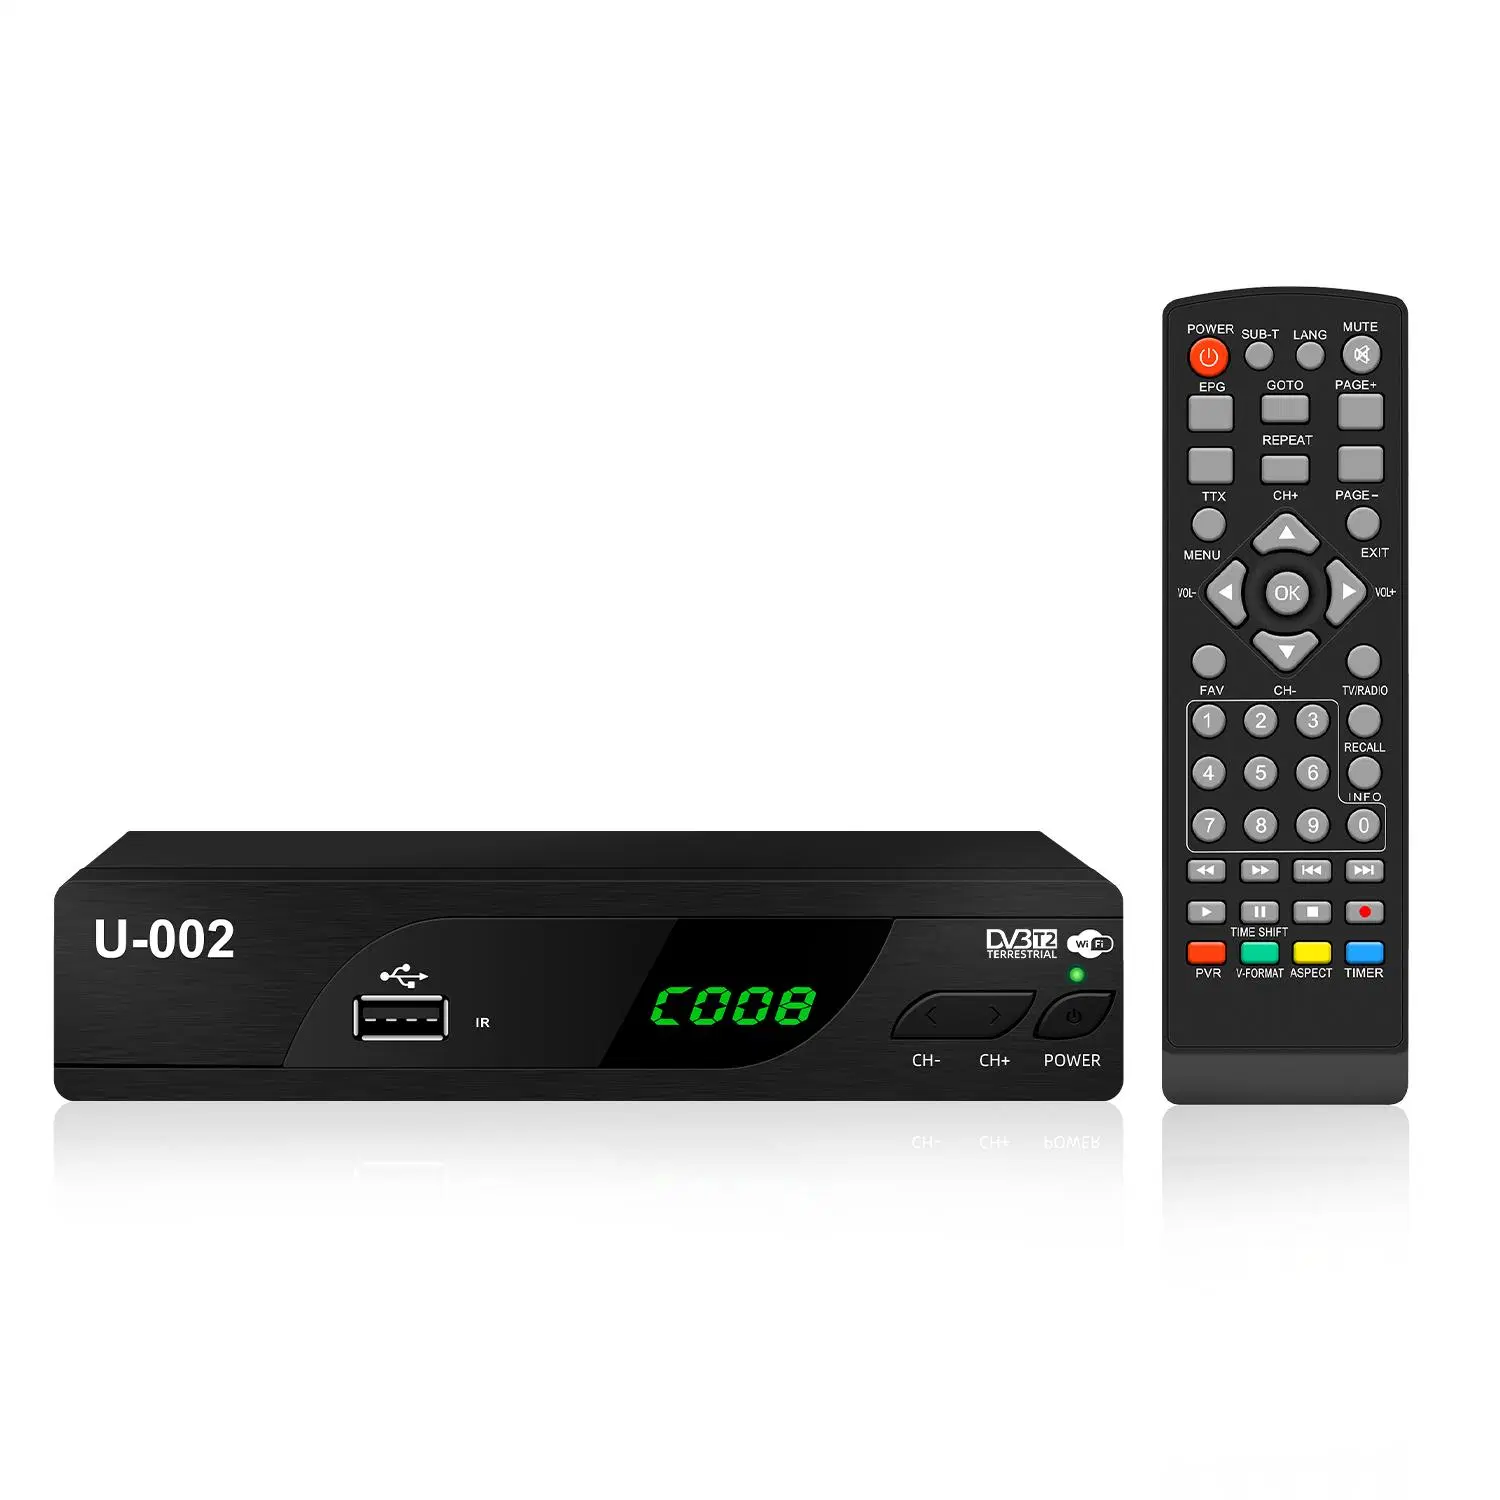 Großhandel/LieferantspunktTV-Box DVB-T2 Digital TV Receiver unterstützt DVB-C Funktion Für Indonesien